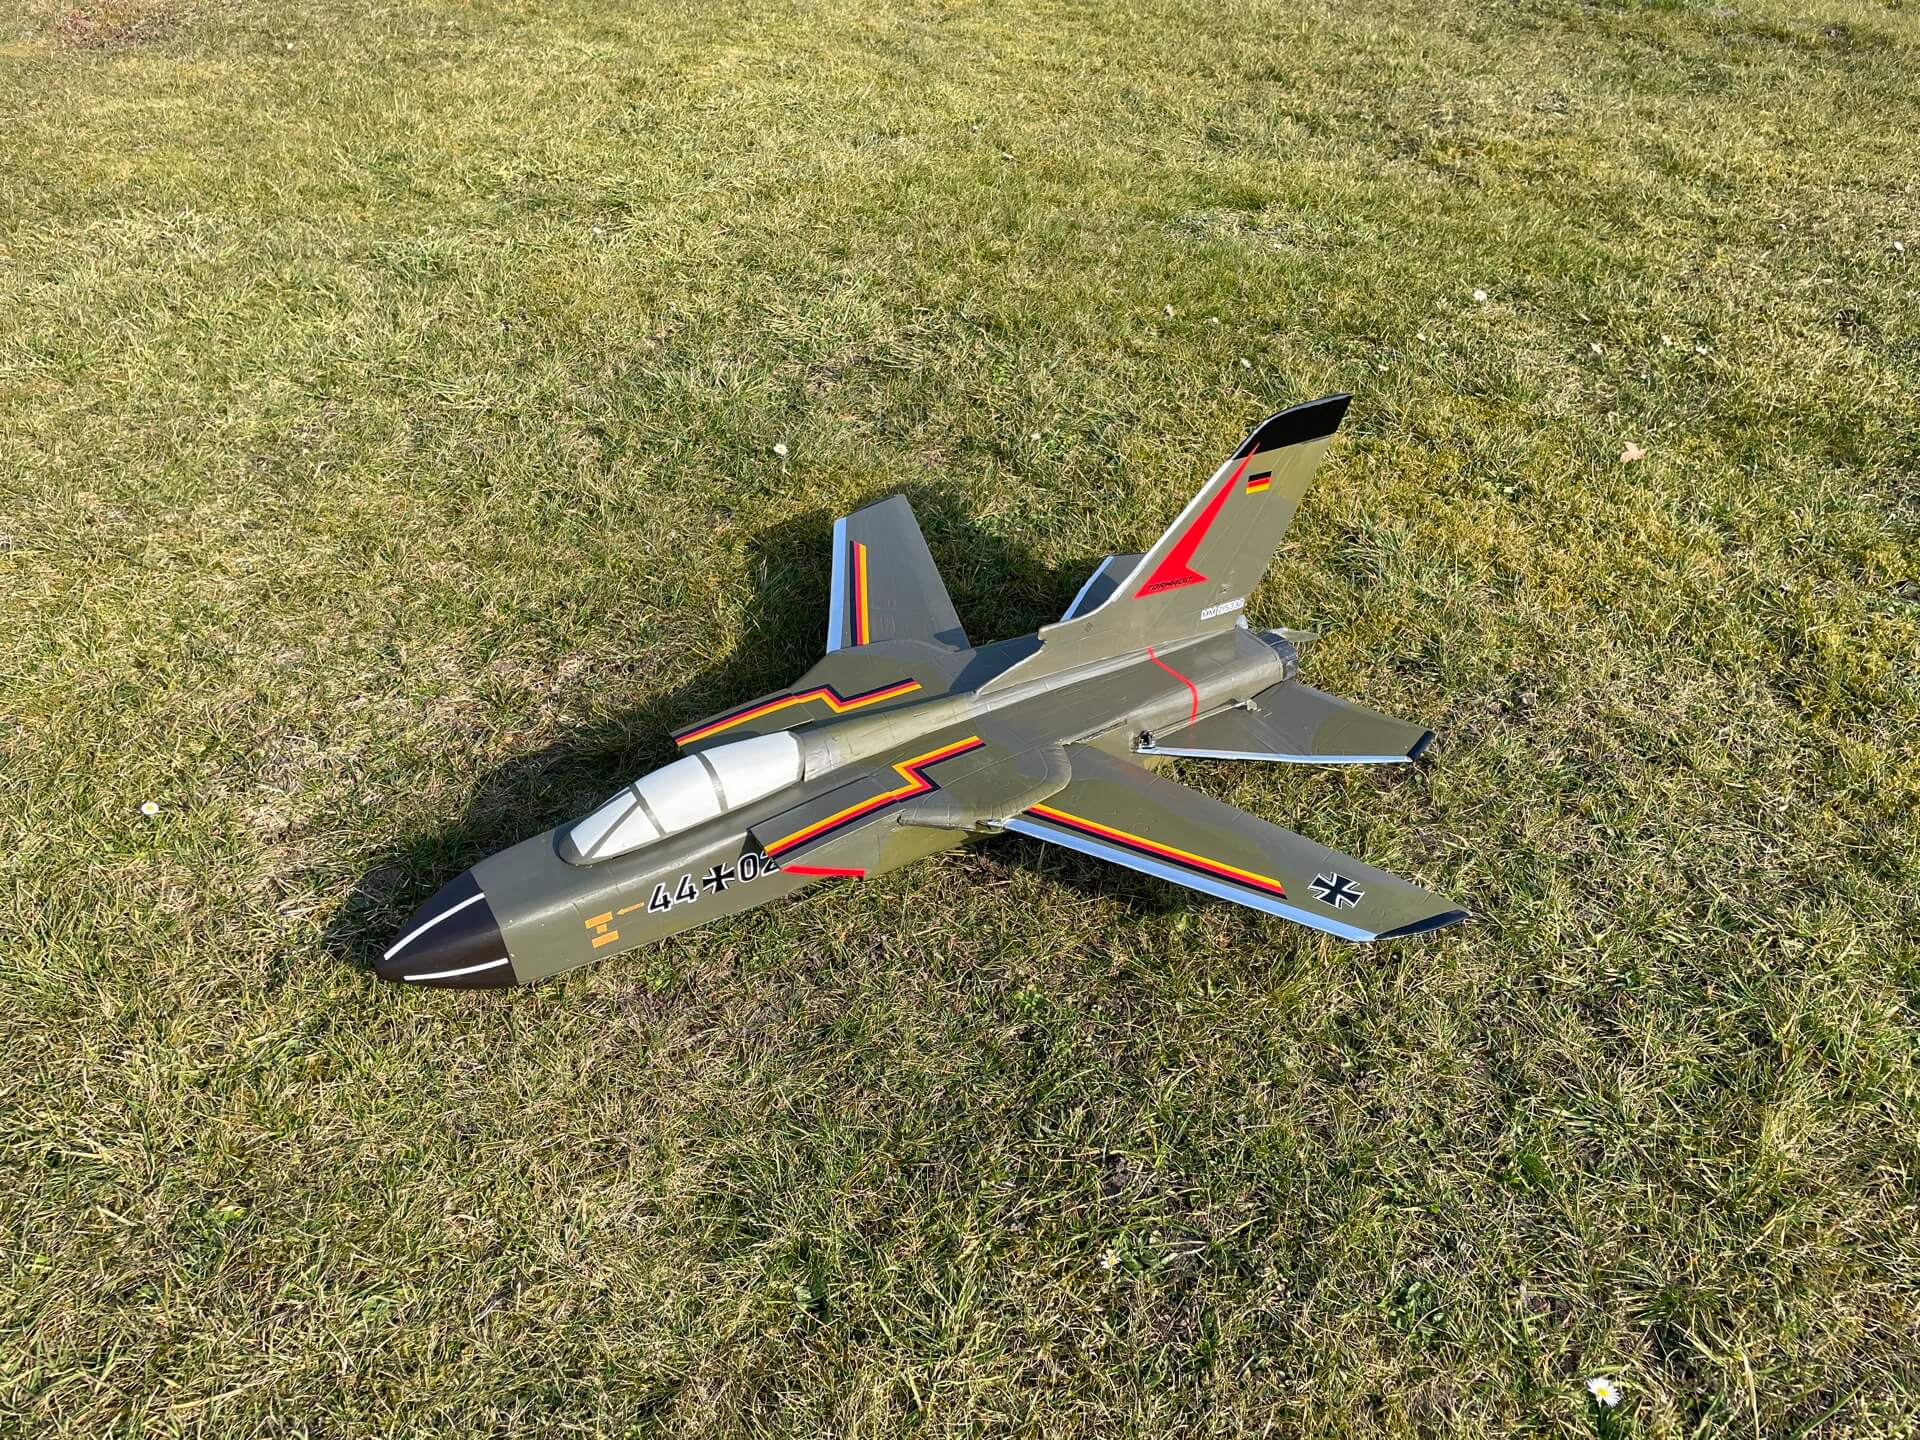 Fertiges Modell des Tornado auf dem Rasen des Vereinsflugplatz.